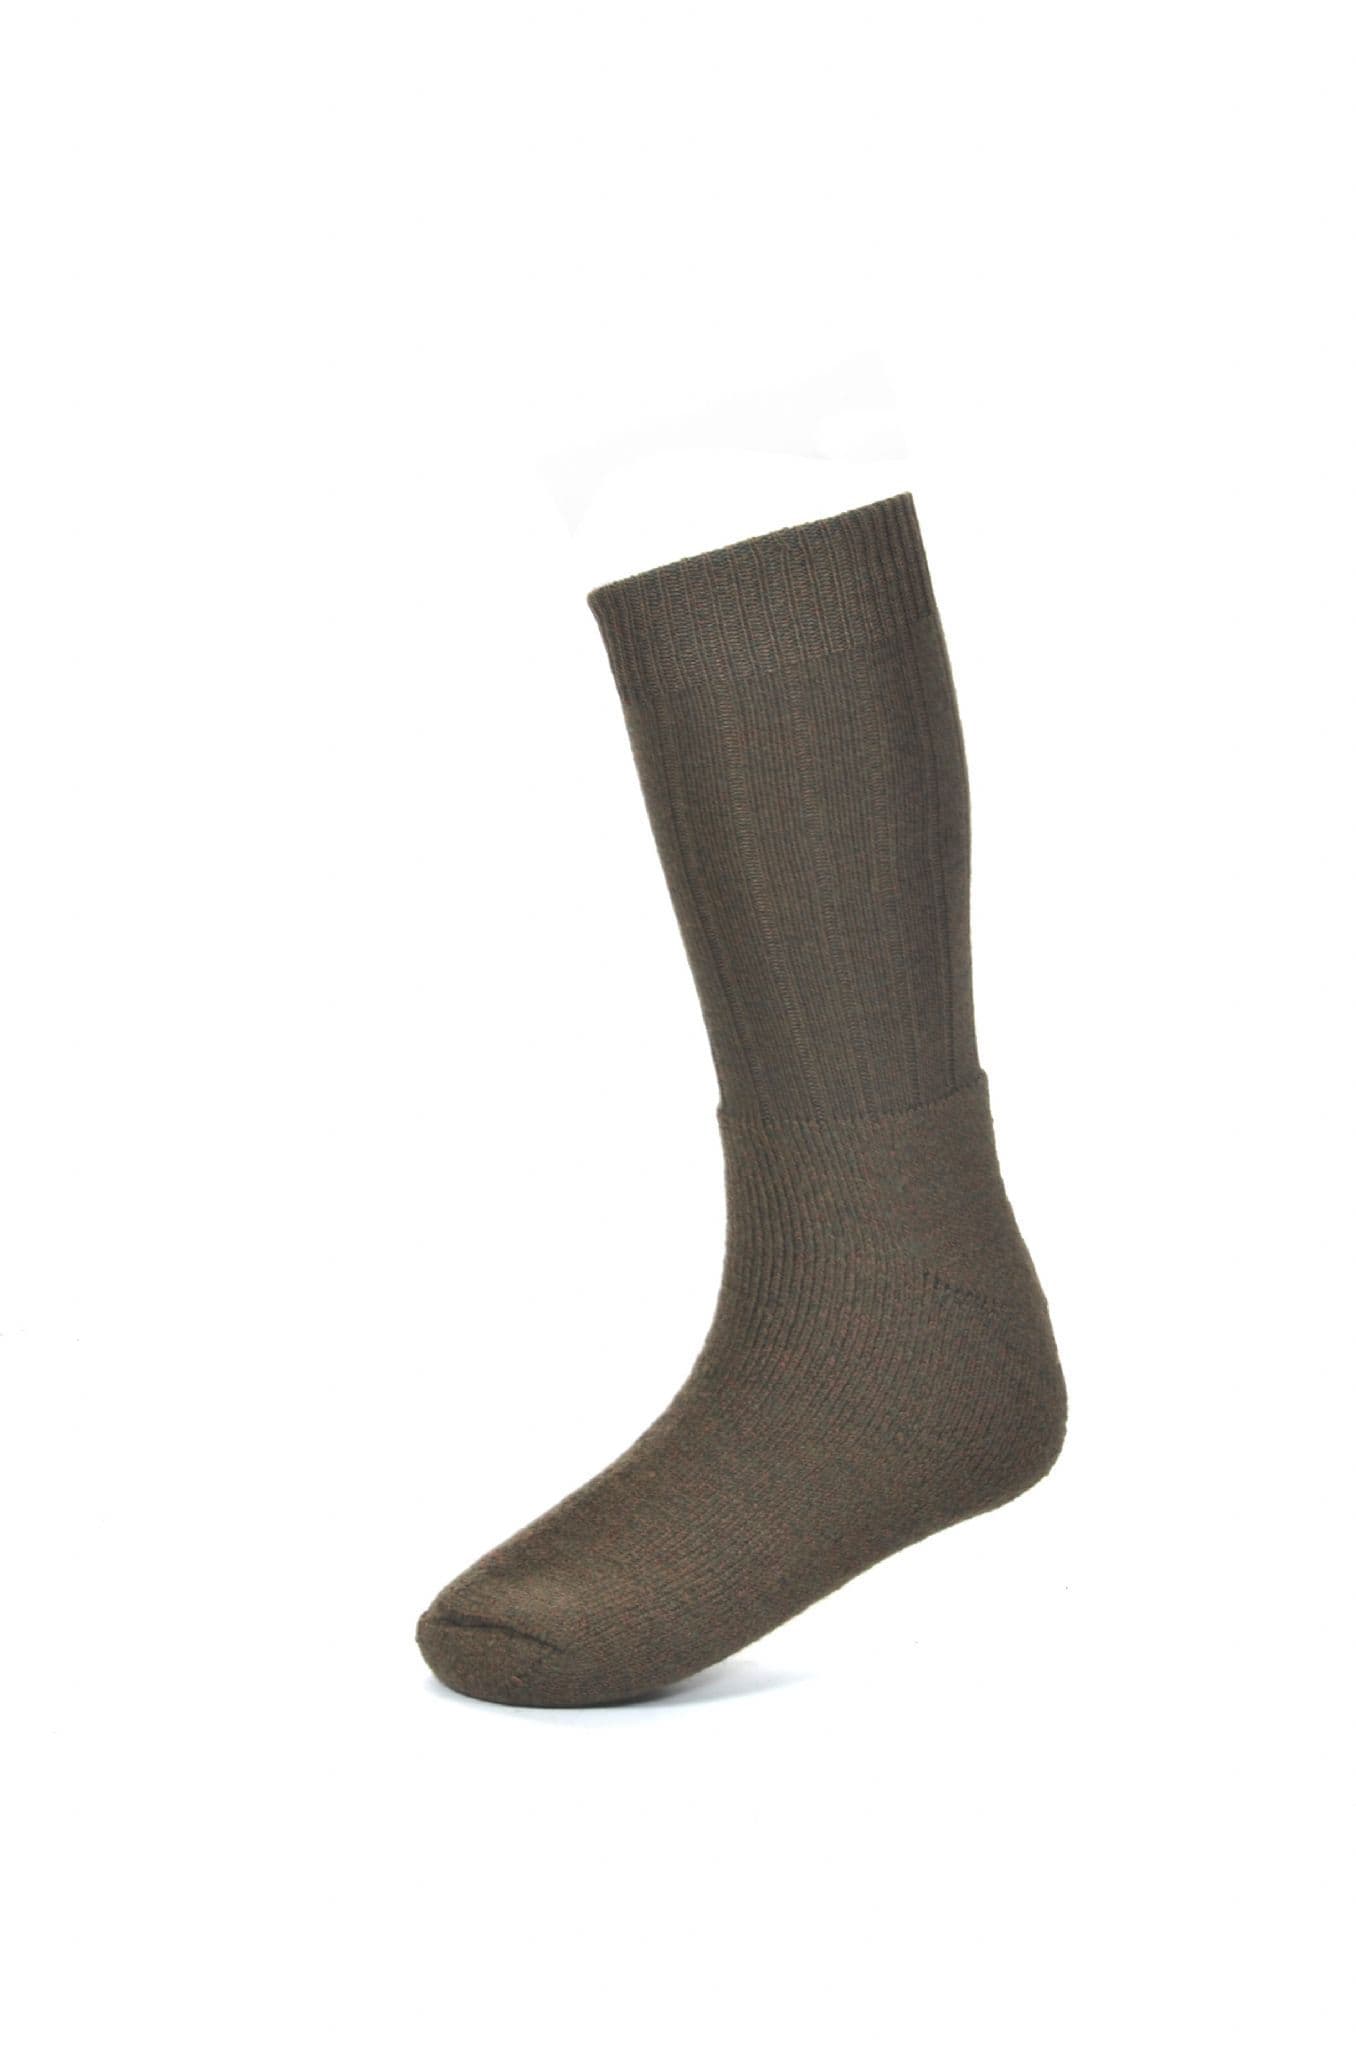 House Of Cheviot Men's Glenelg Short Boot Cushion Foot Socks - Bracken.